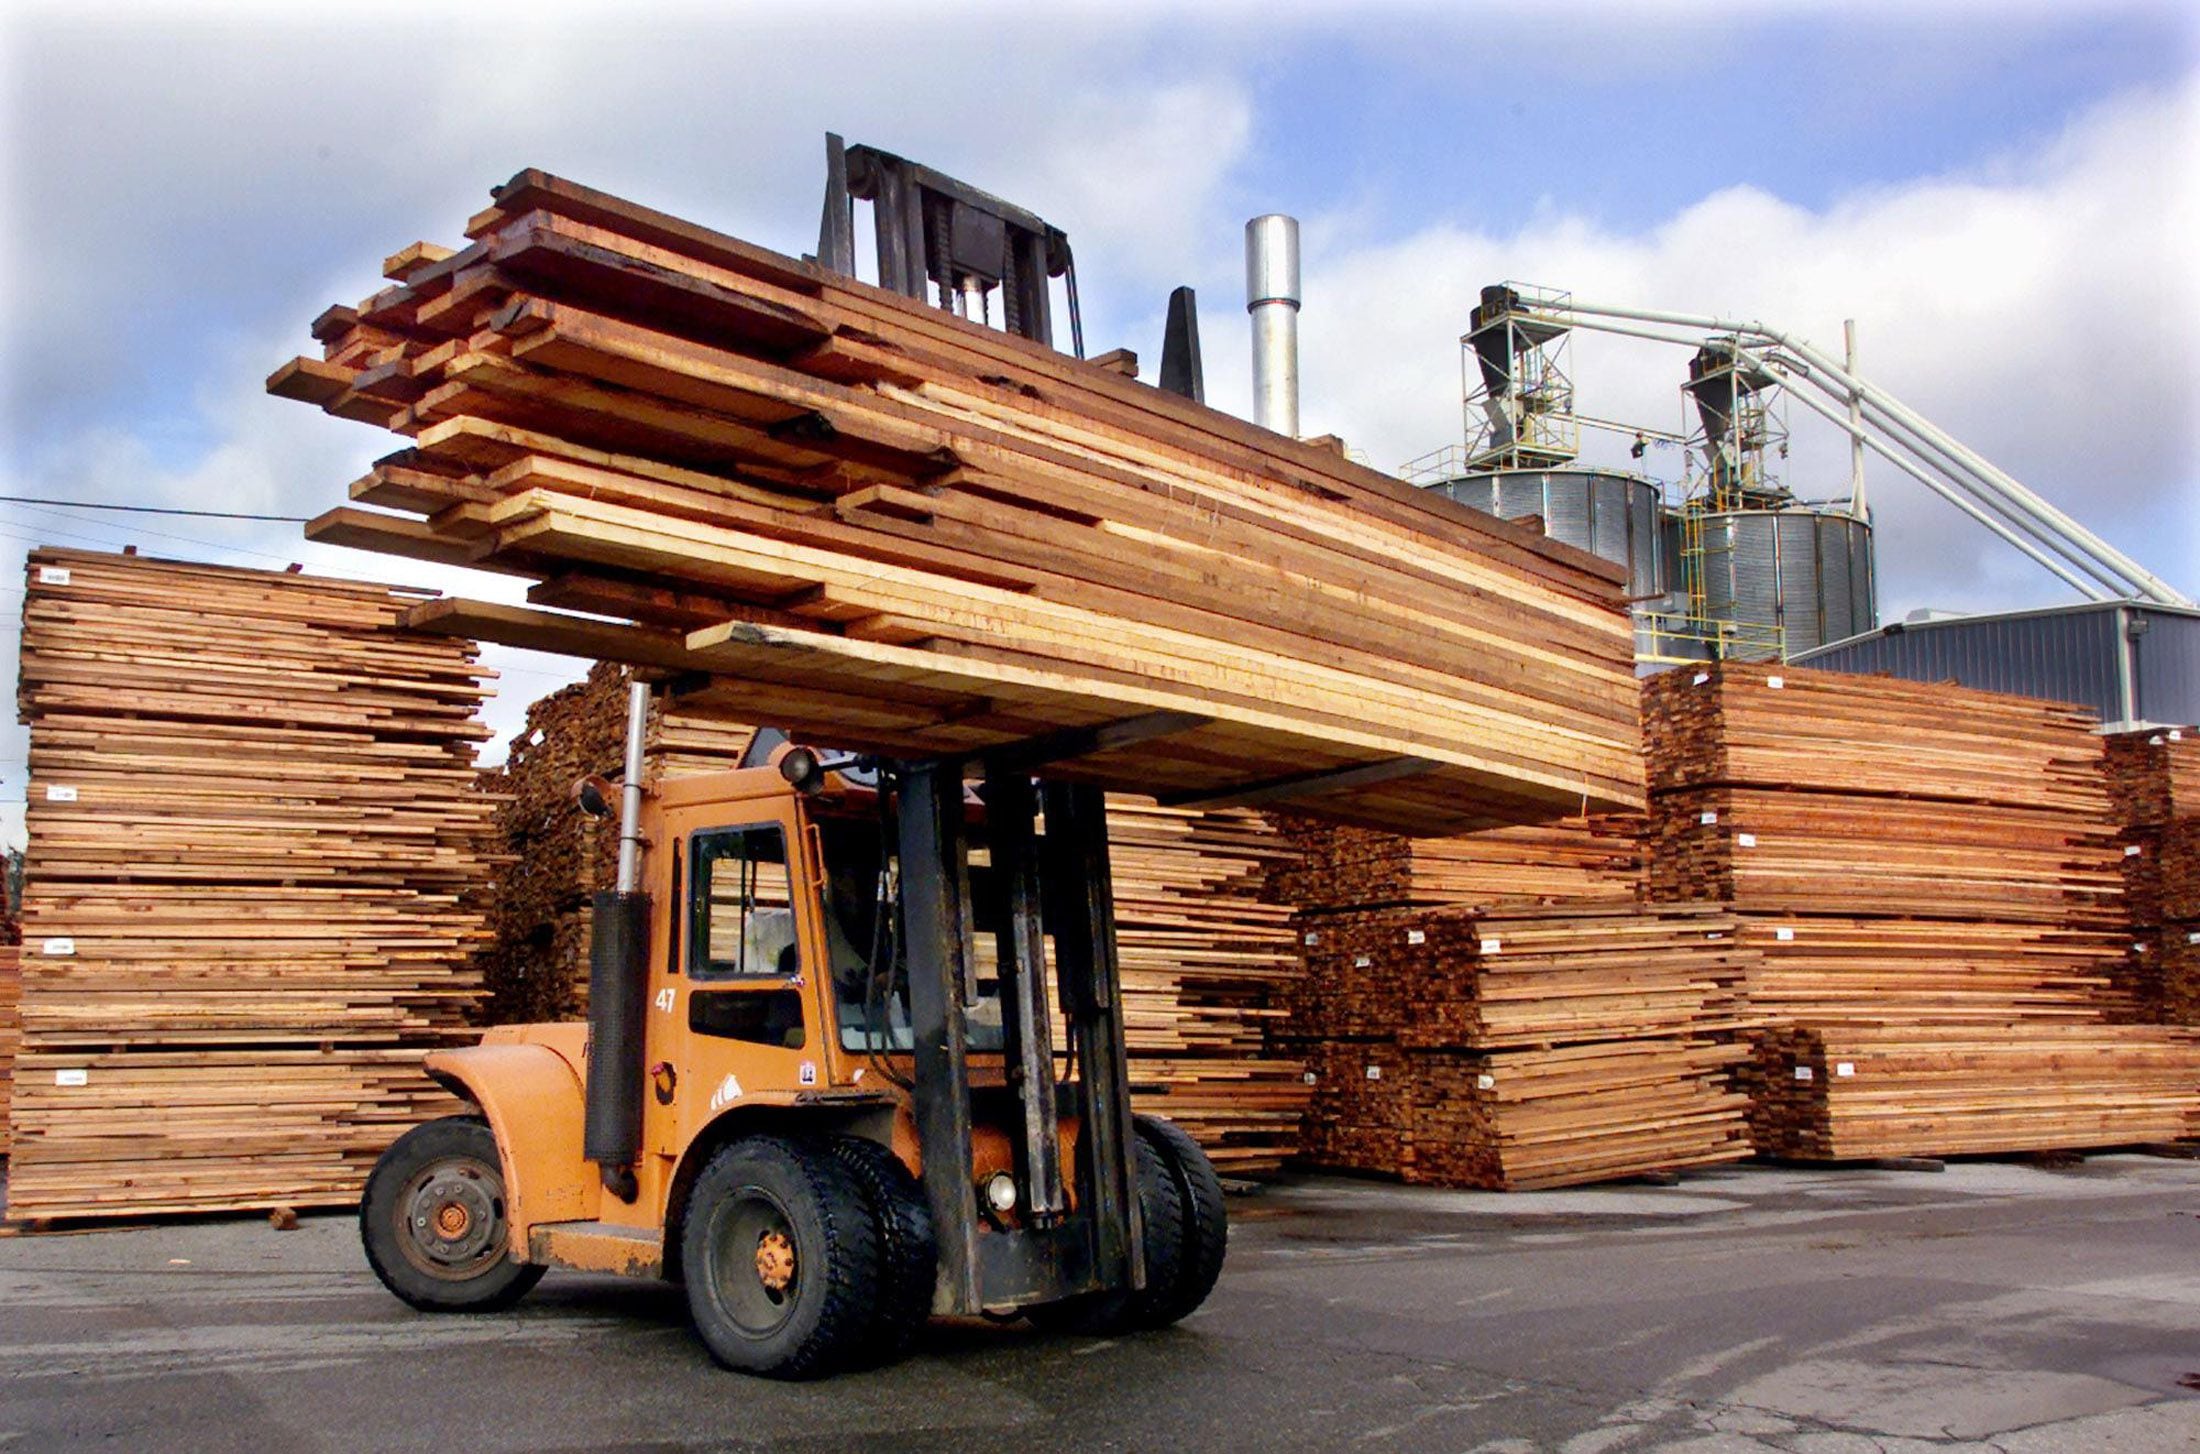 Лесозаготовка деревообработка. Пилорама Лесная промышленность. ЛПК Лесной промышленности. Лесообрабатывающая промышленность Канады. Леснаяпромывшленность.